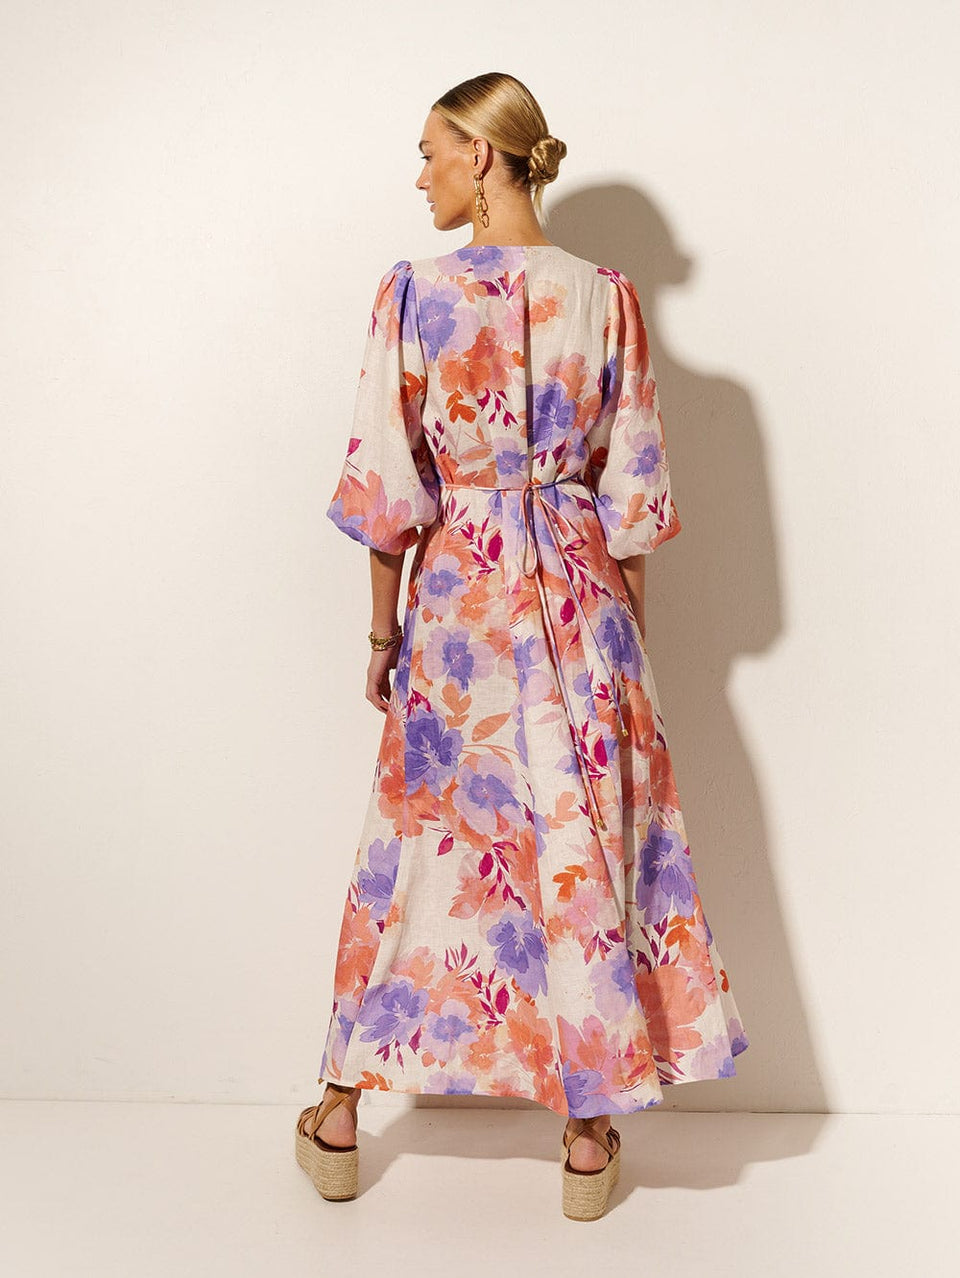 Johannes Maxi Dress KIVARI | Model wears pink and purple floral maxi dress back view